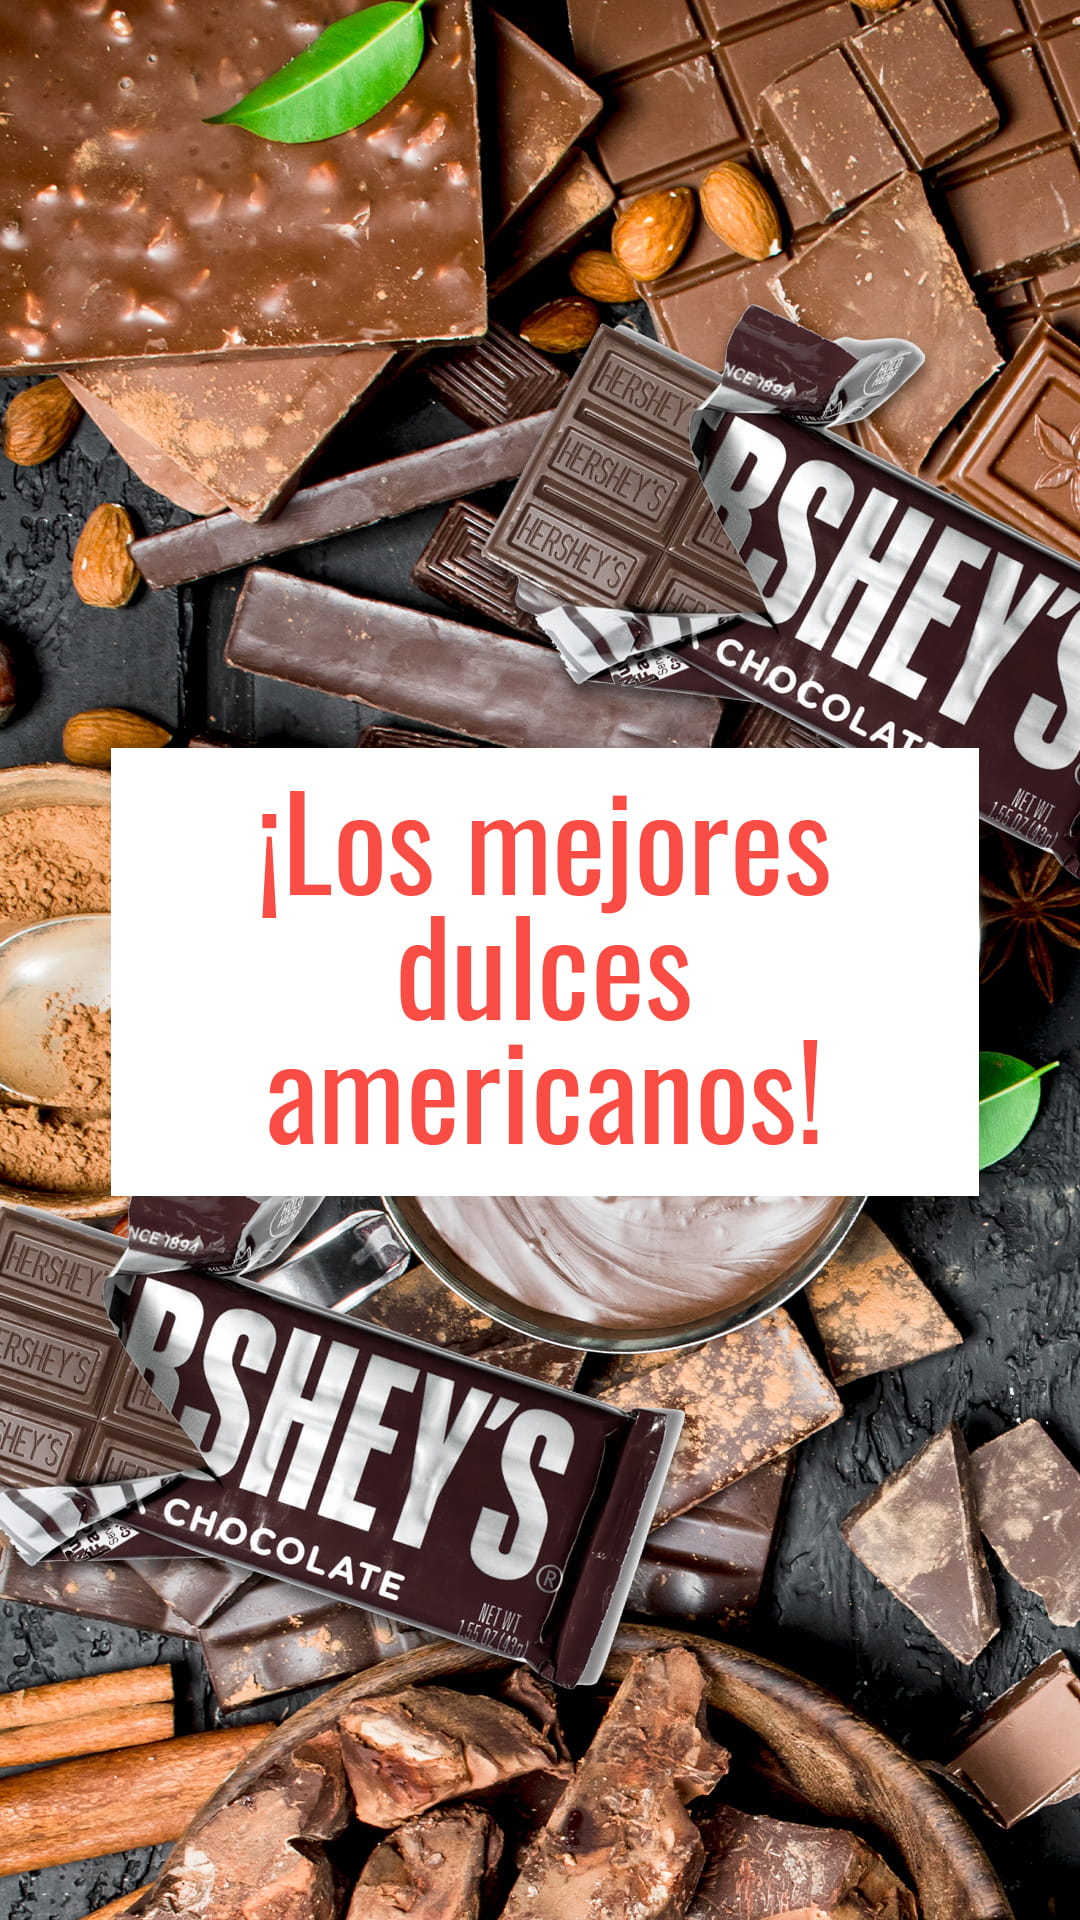 Dulces La Ciudad  Distribuidor mayorista de caramelos y chuches en Madrid